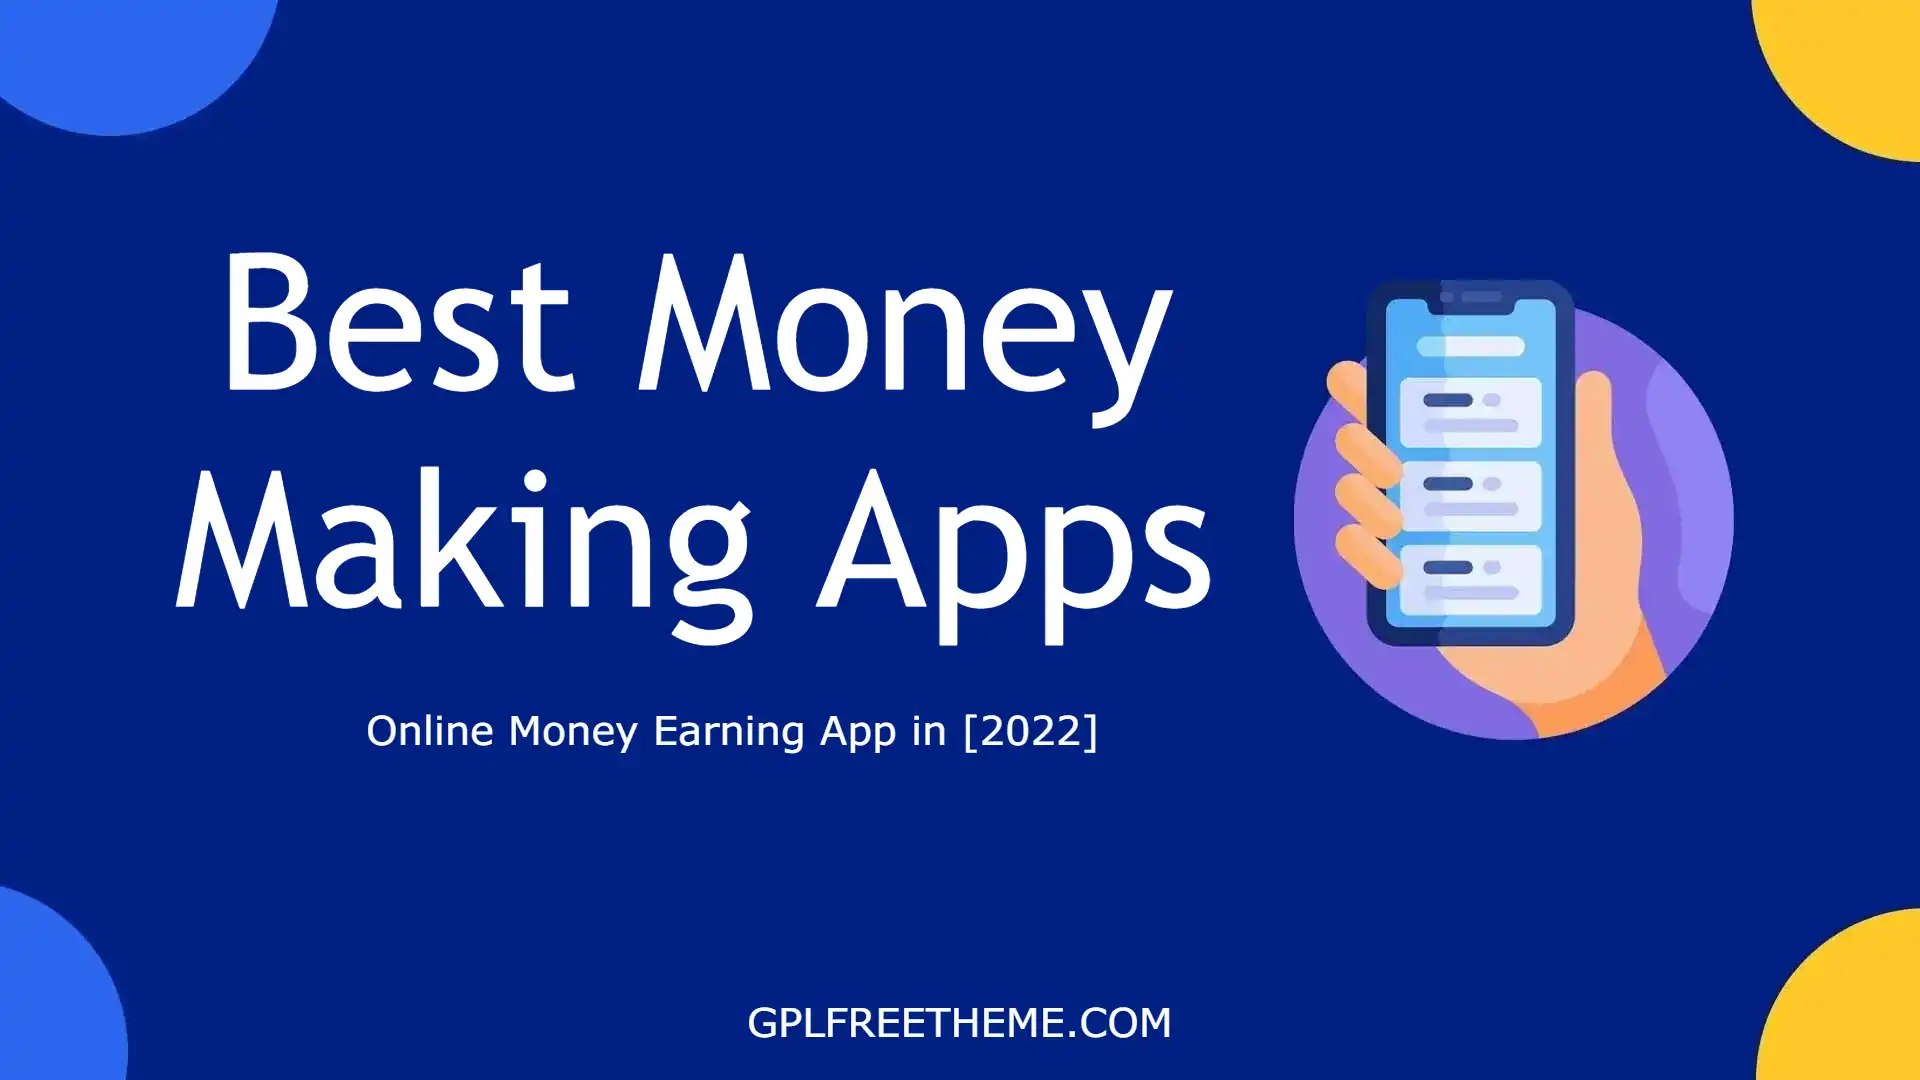 Best Money Making Apps - Online Money Earning App in [2022]